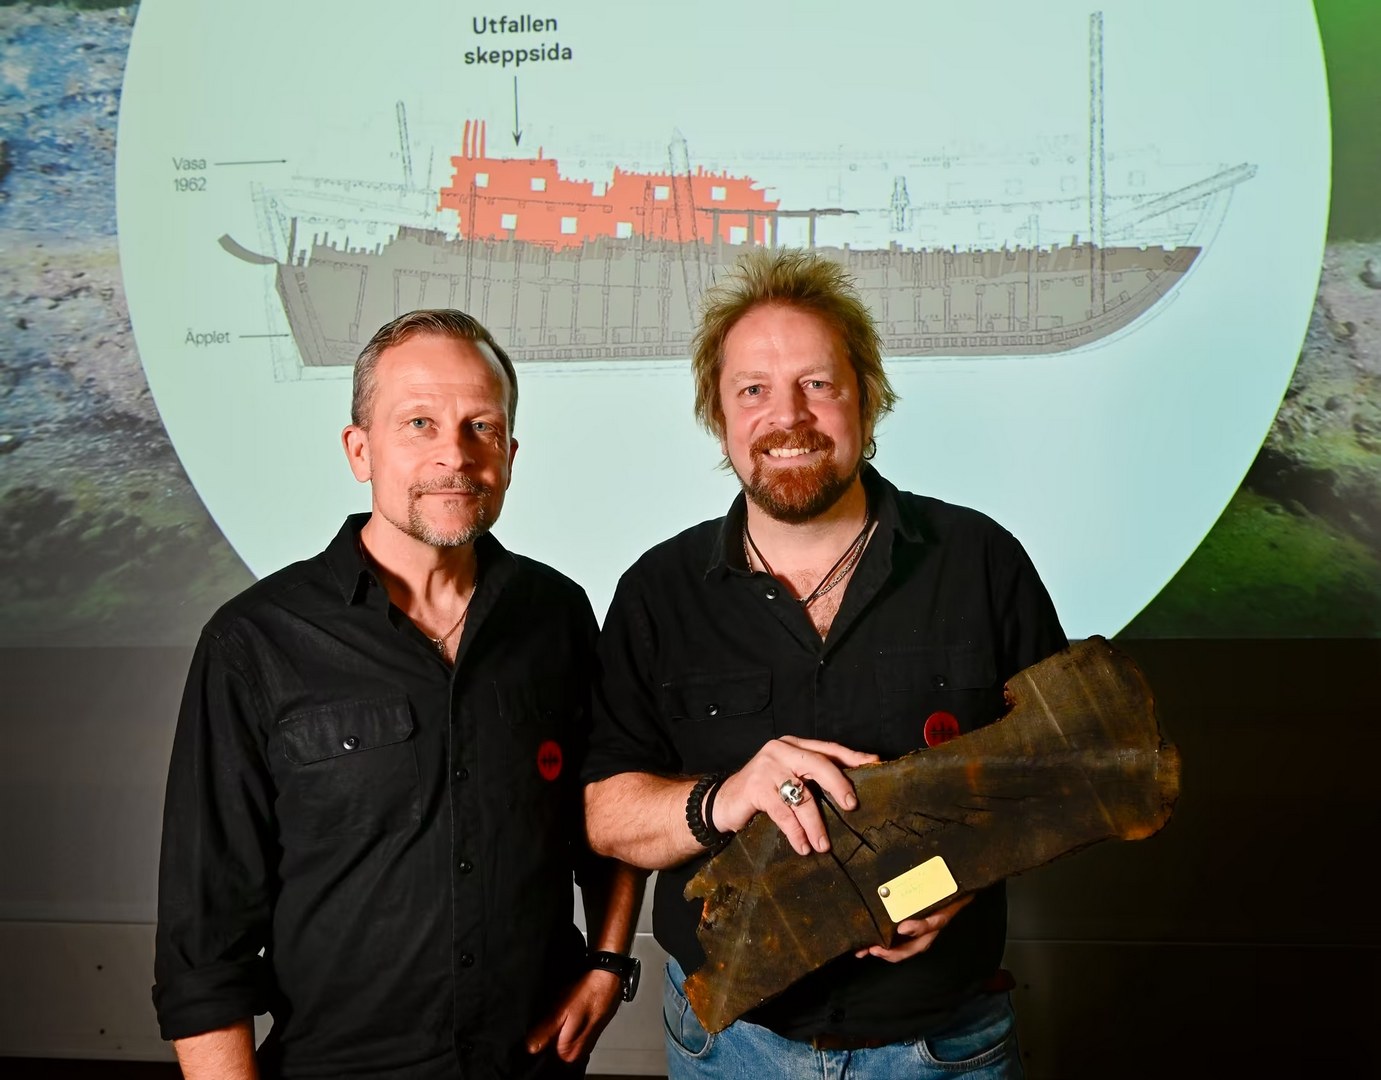 Äpplet: в Швеции нашли сестринский корабль знаменитого Vasa